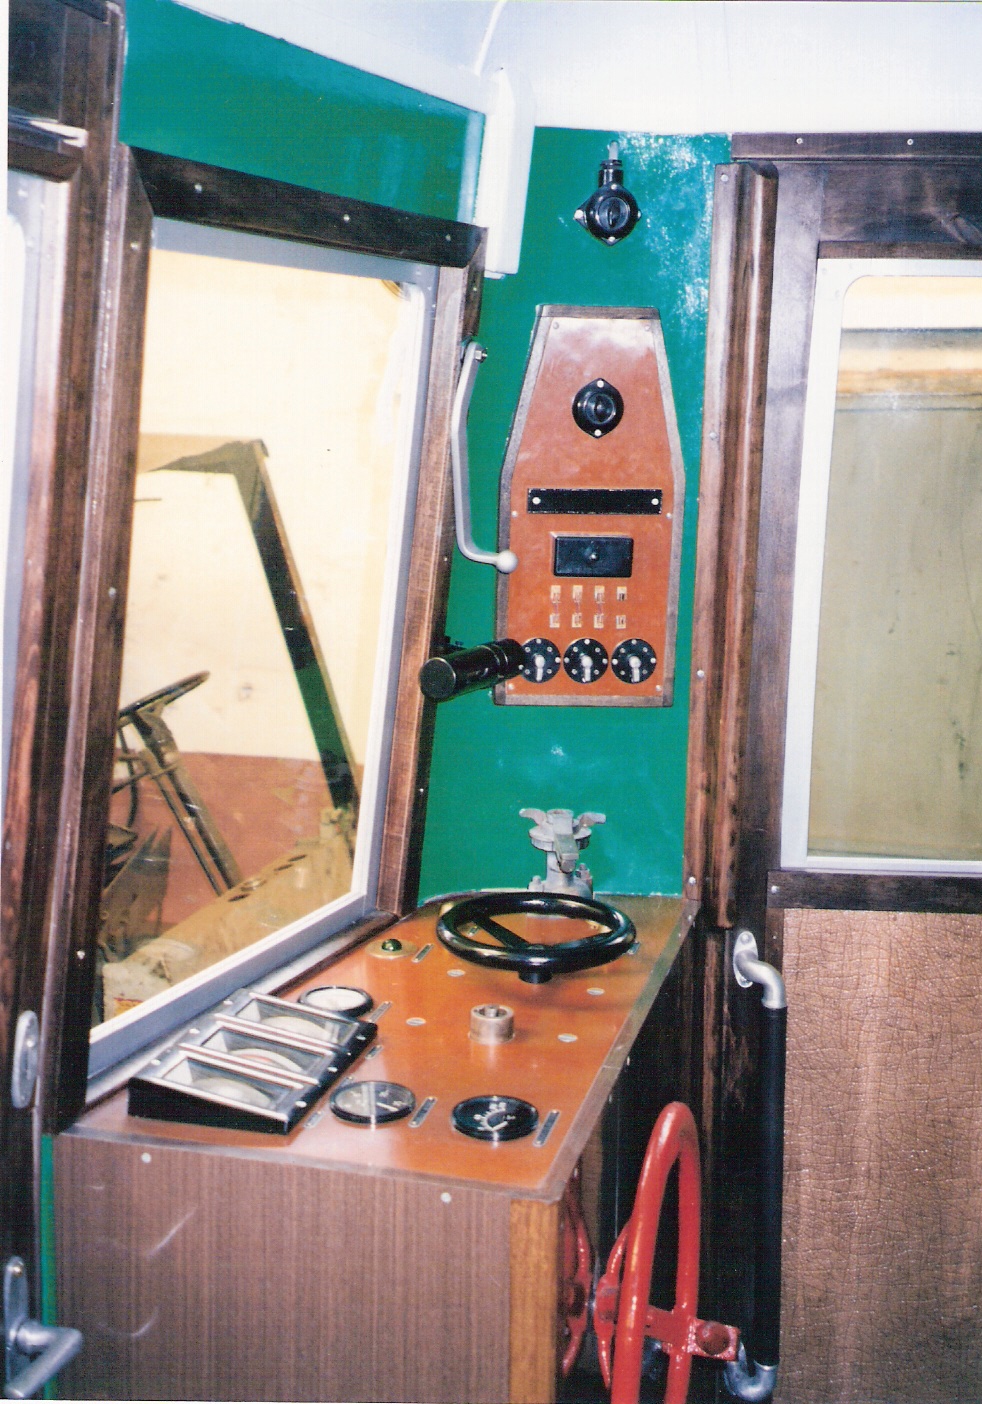  Motorový vozeň M 274.004, pohľad na riadiaci pult. Foto: Anon., cca 1998. 126 x 178, COLOR 